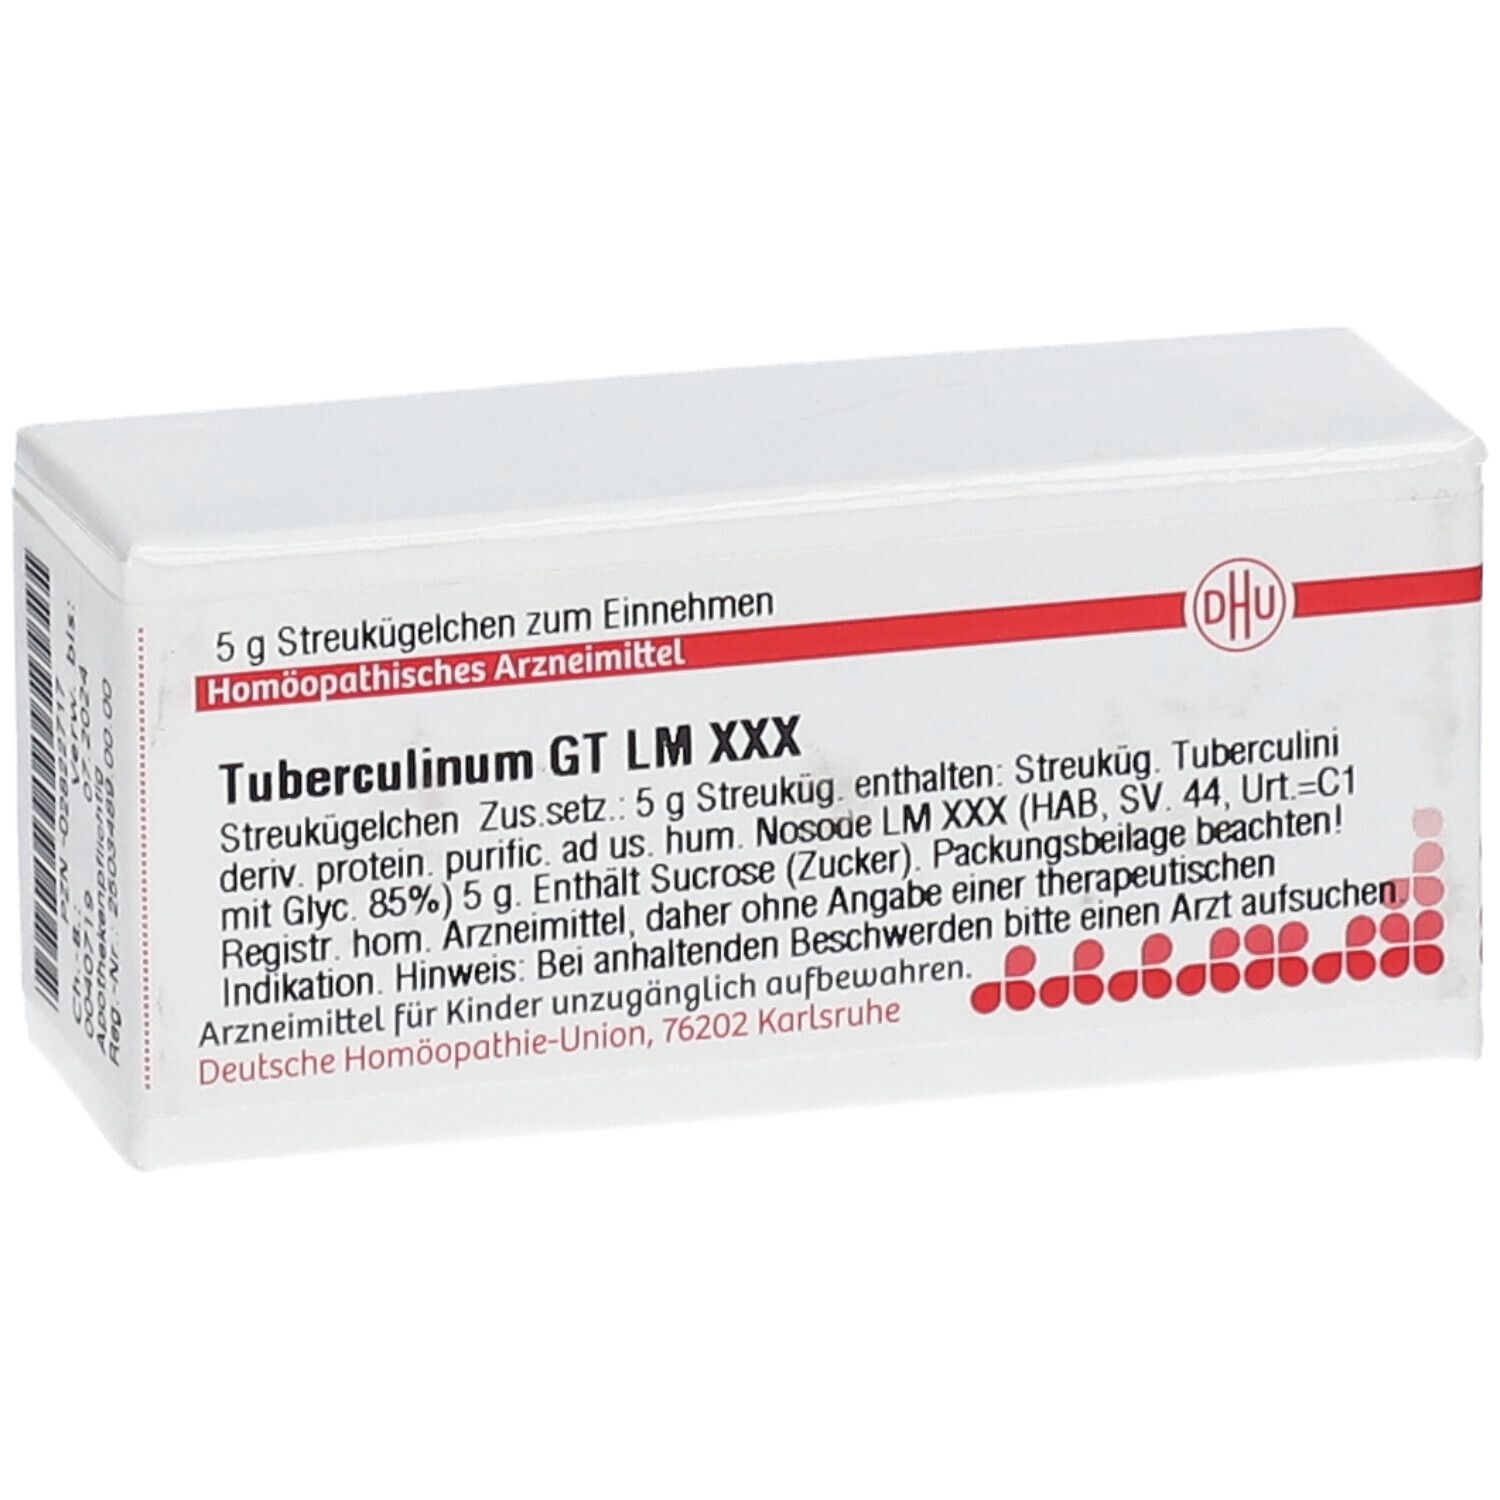 DHU Tuberculinum GT LM XXX